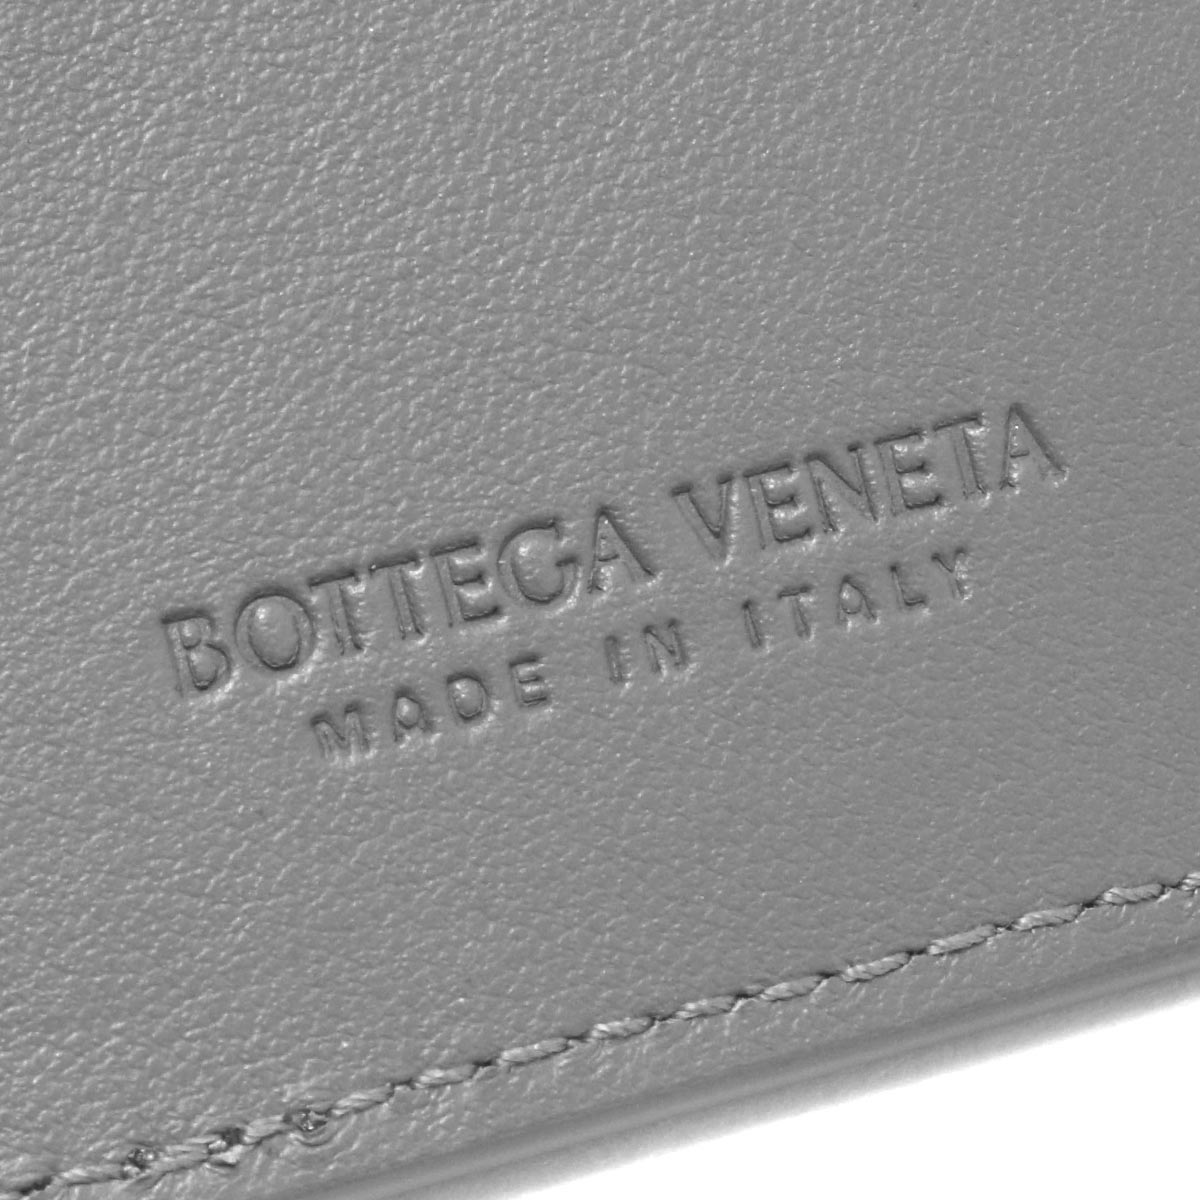 ボッテガヴェネタ (ボッテガ・ヴェネタ) キーケース メンズ イントレチャート サンダーグレー 630336 VCPQ4 1242 2021年秋冬新作  BOTTEGA VENETA | ブルークウォッチカンパニー